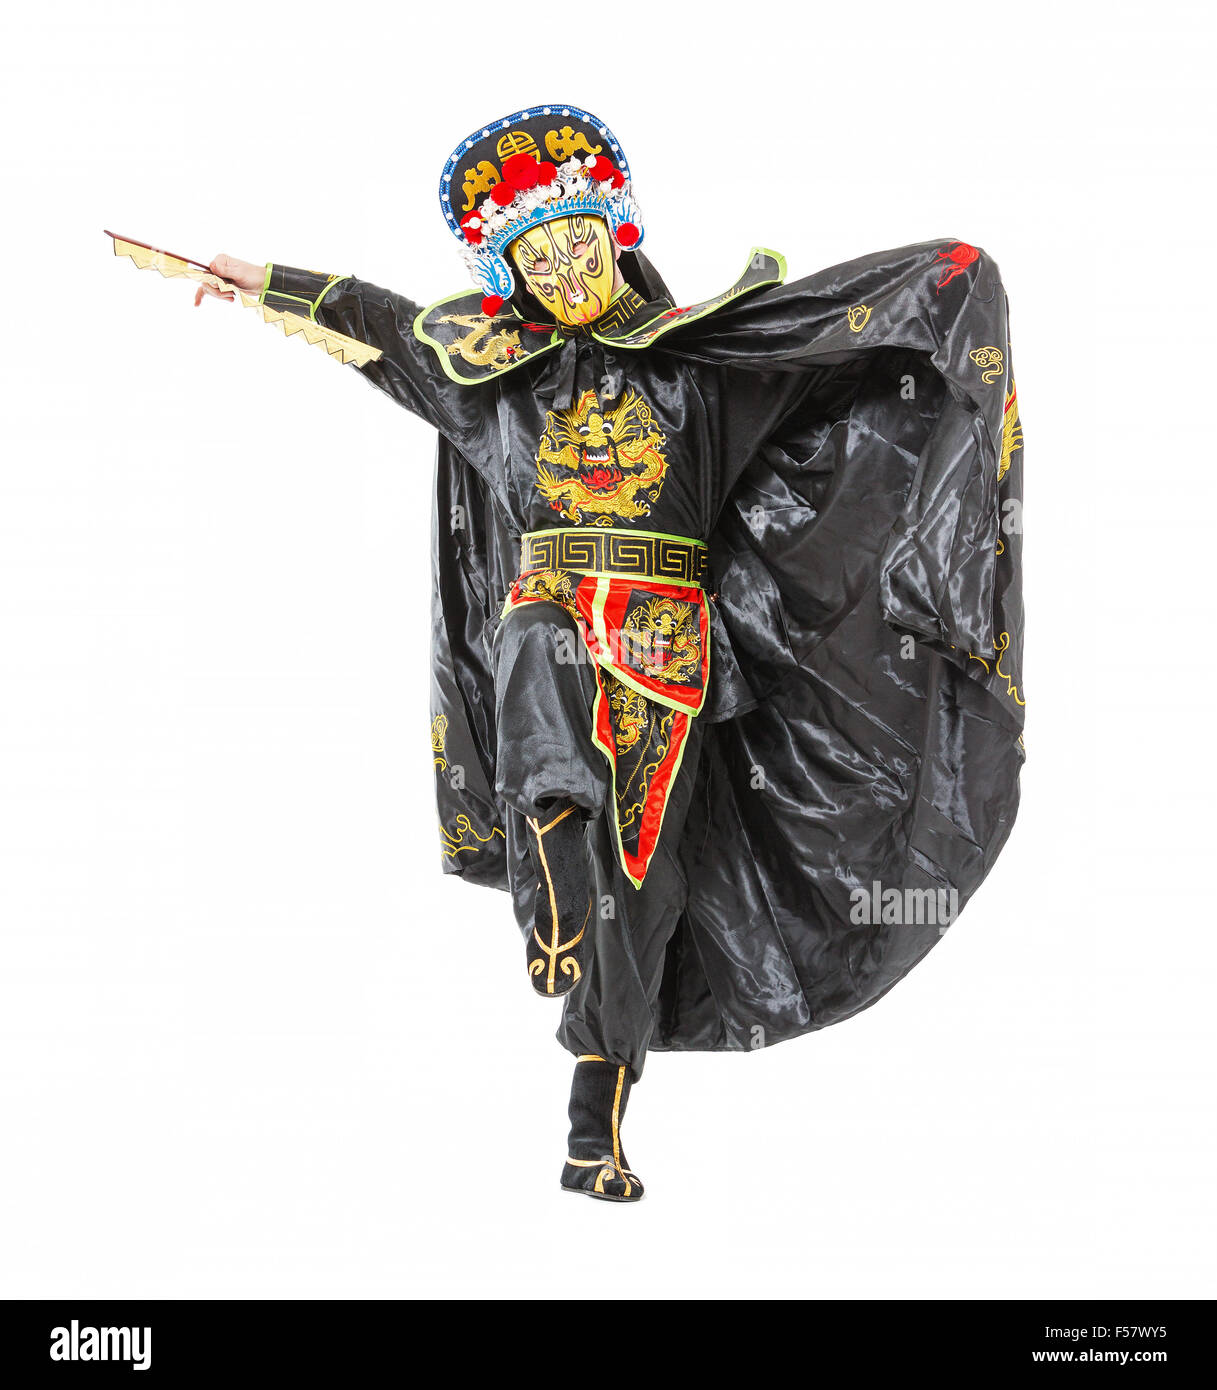 L'homme en costume décoré de samouraï avec ventilateur, sur fond blanc Banque D'Images